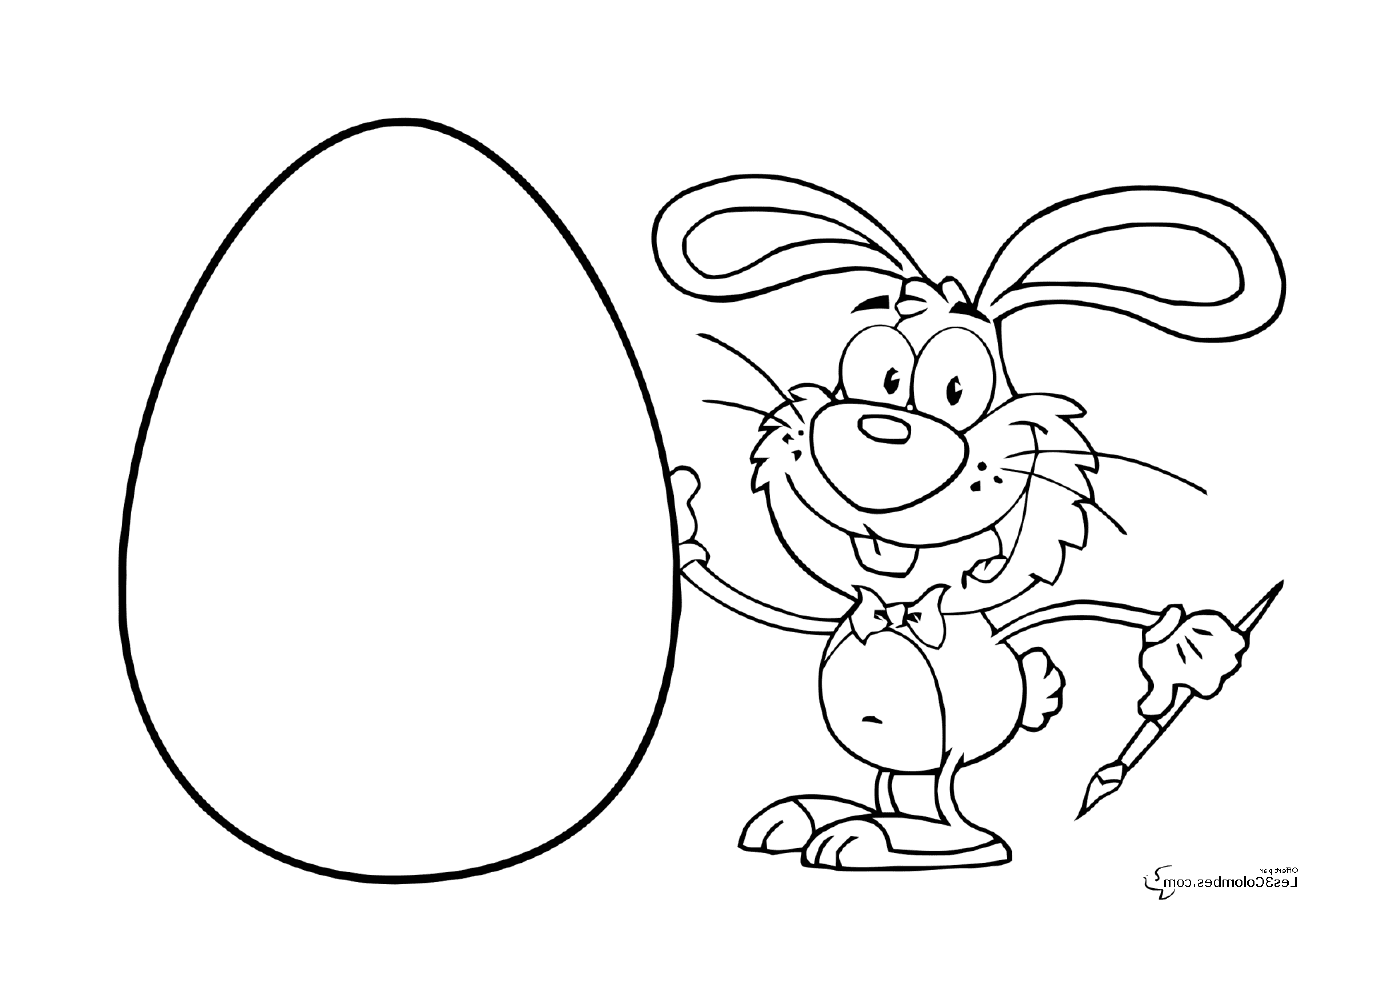  एक ईस्टर खरगोश अंडे धारण करता है 